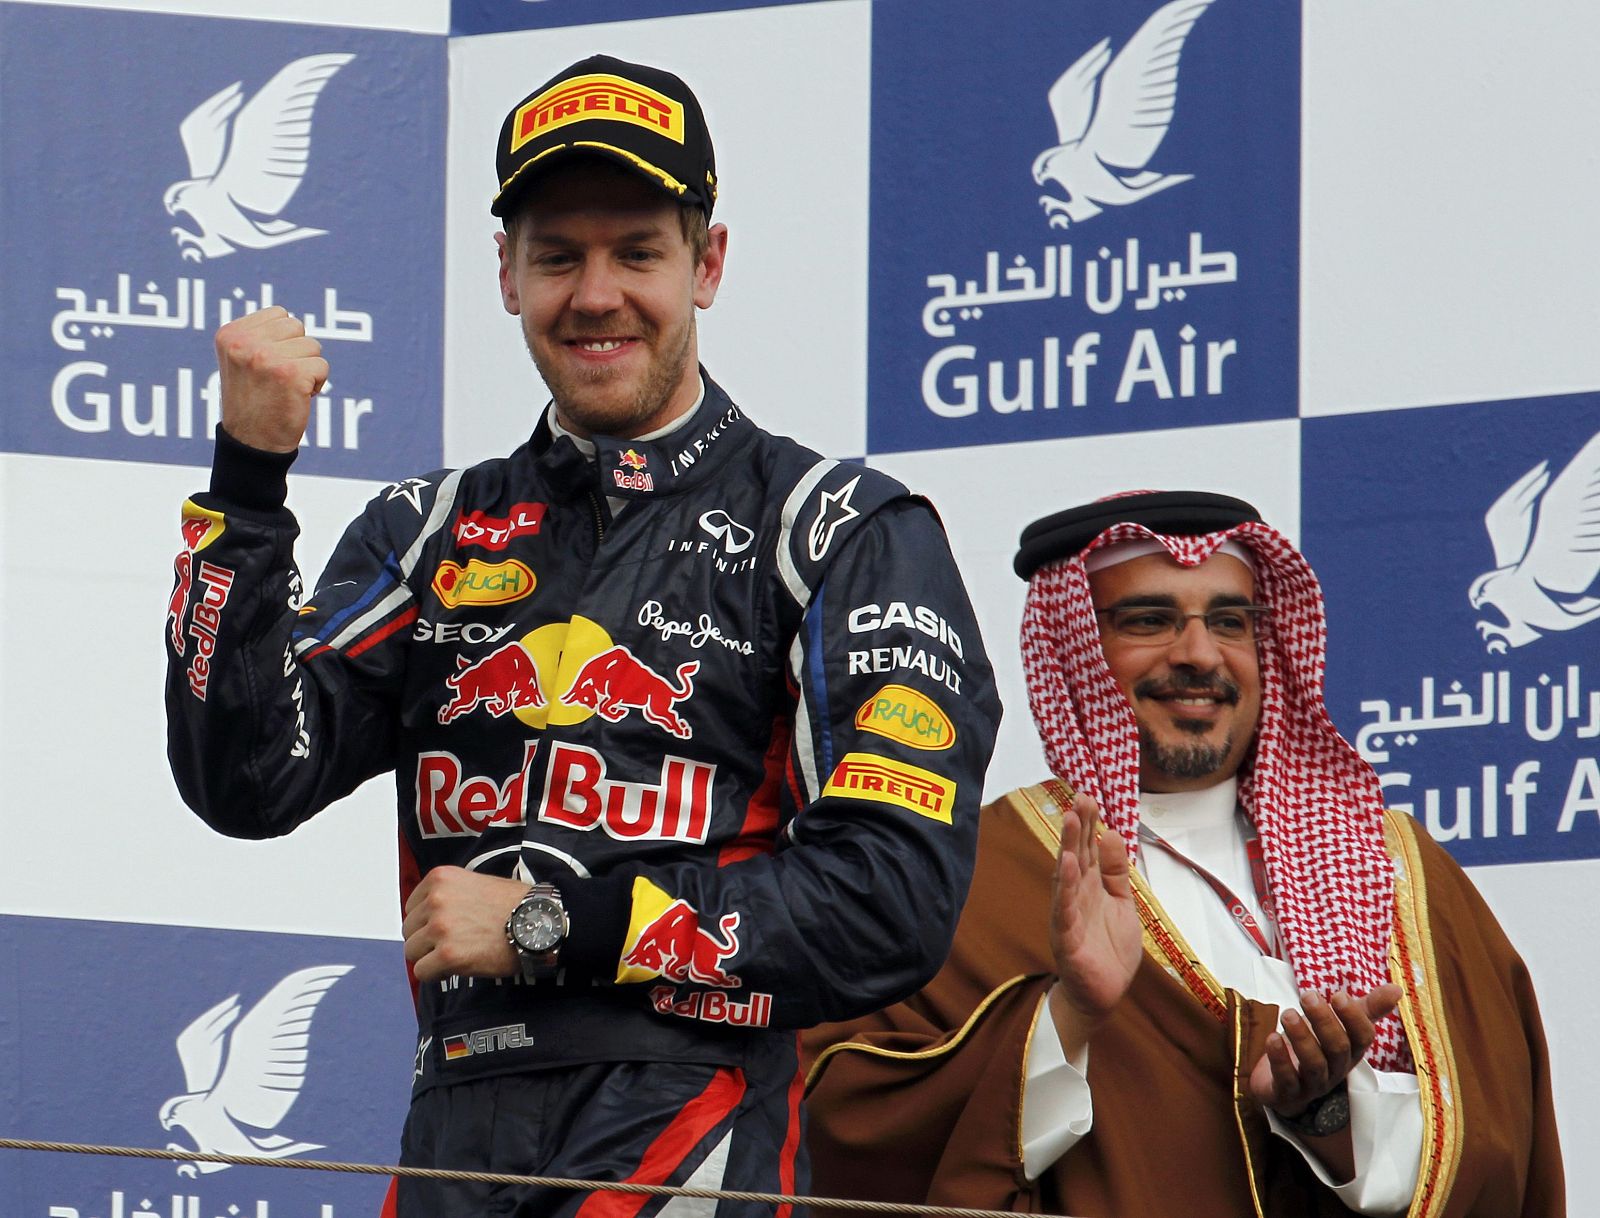 El piloto de Red Bull Sebastian Vettel en el podio de Baréin.